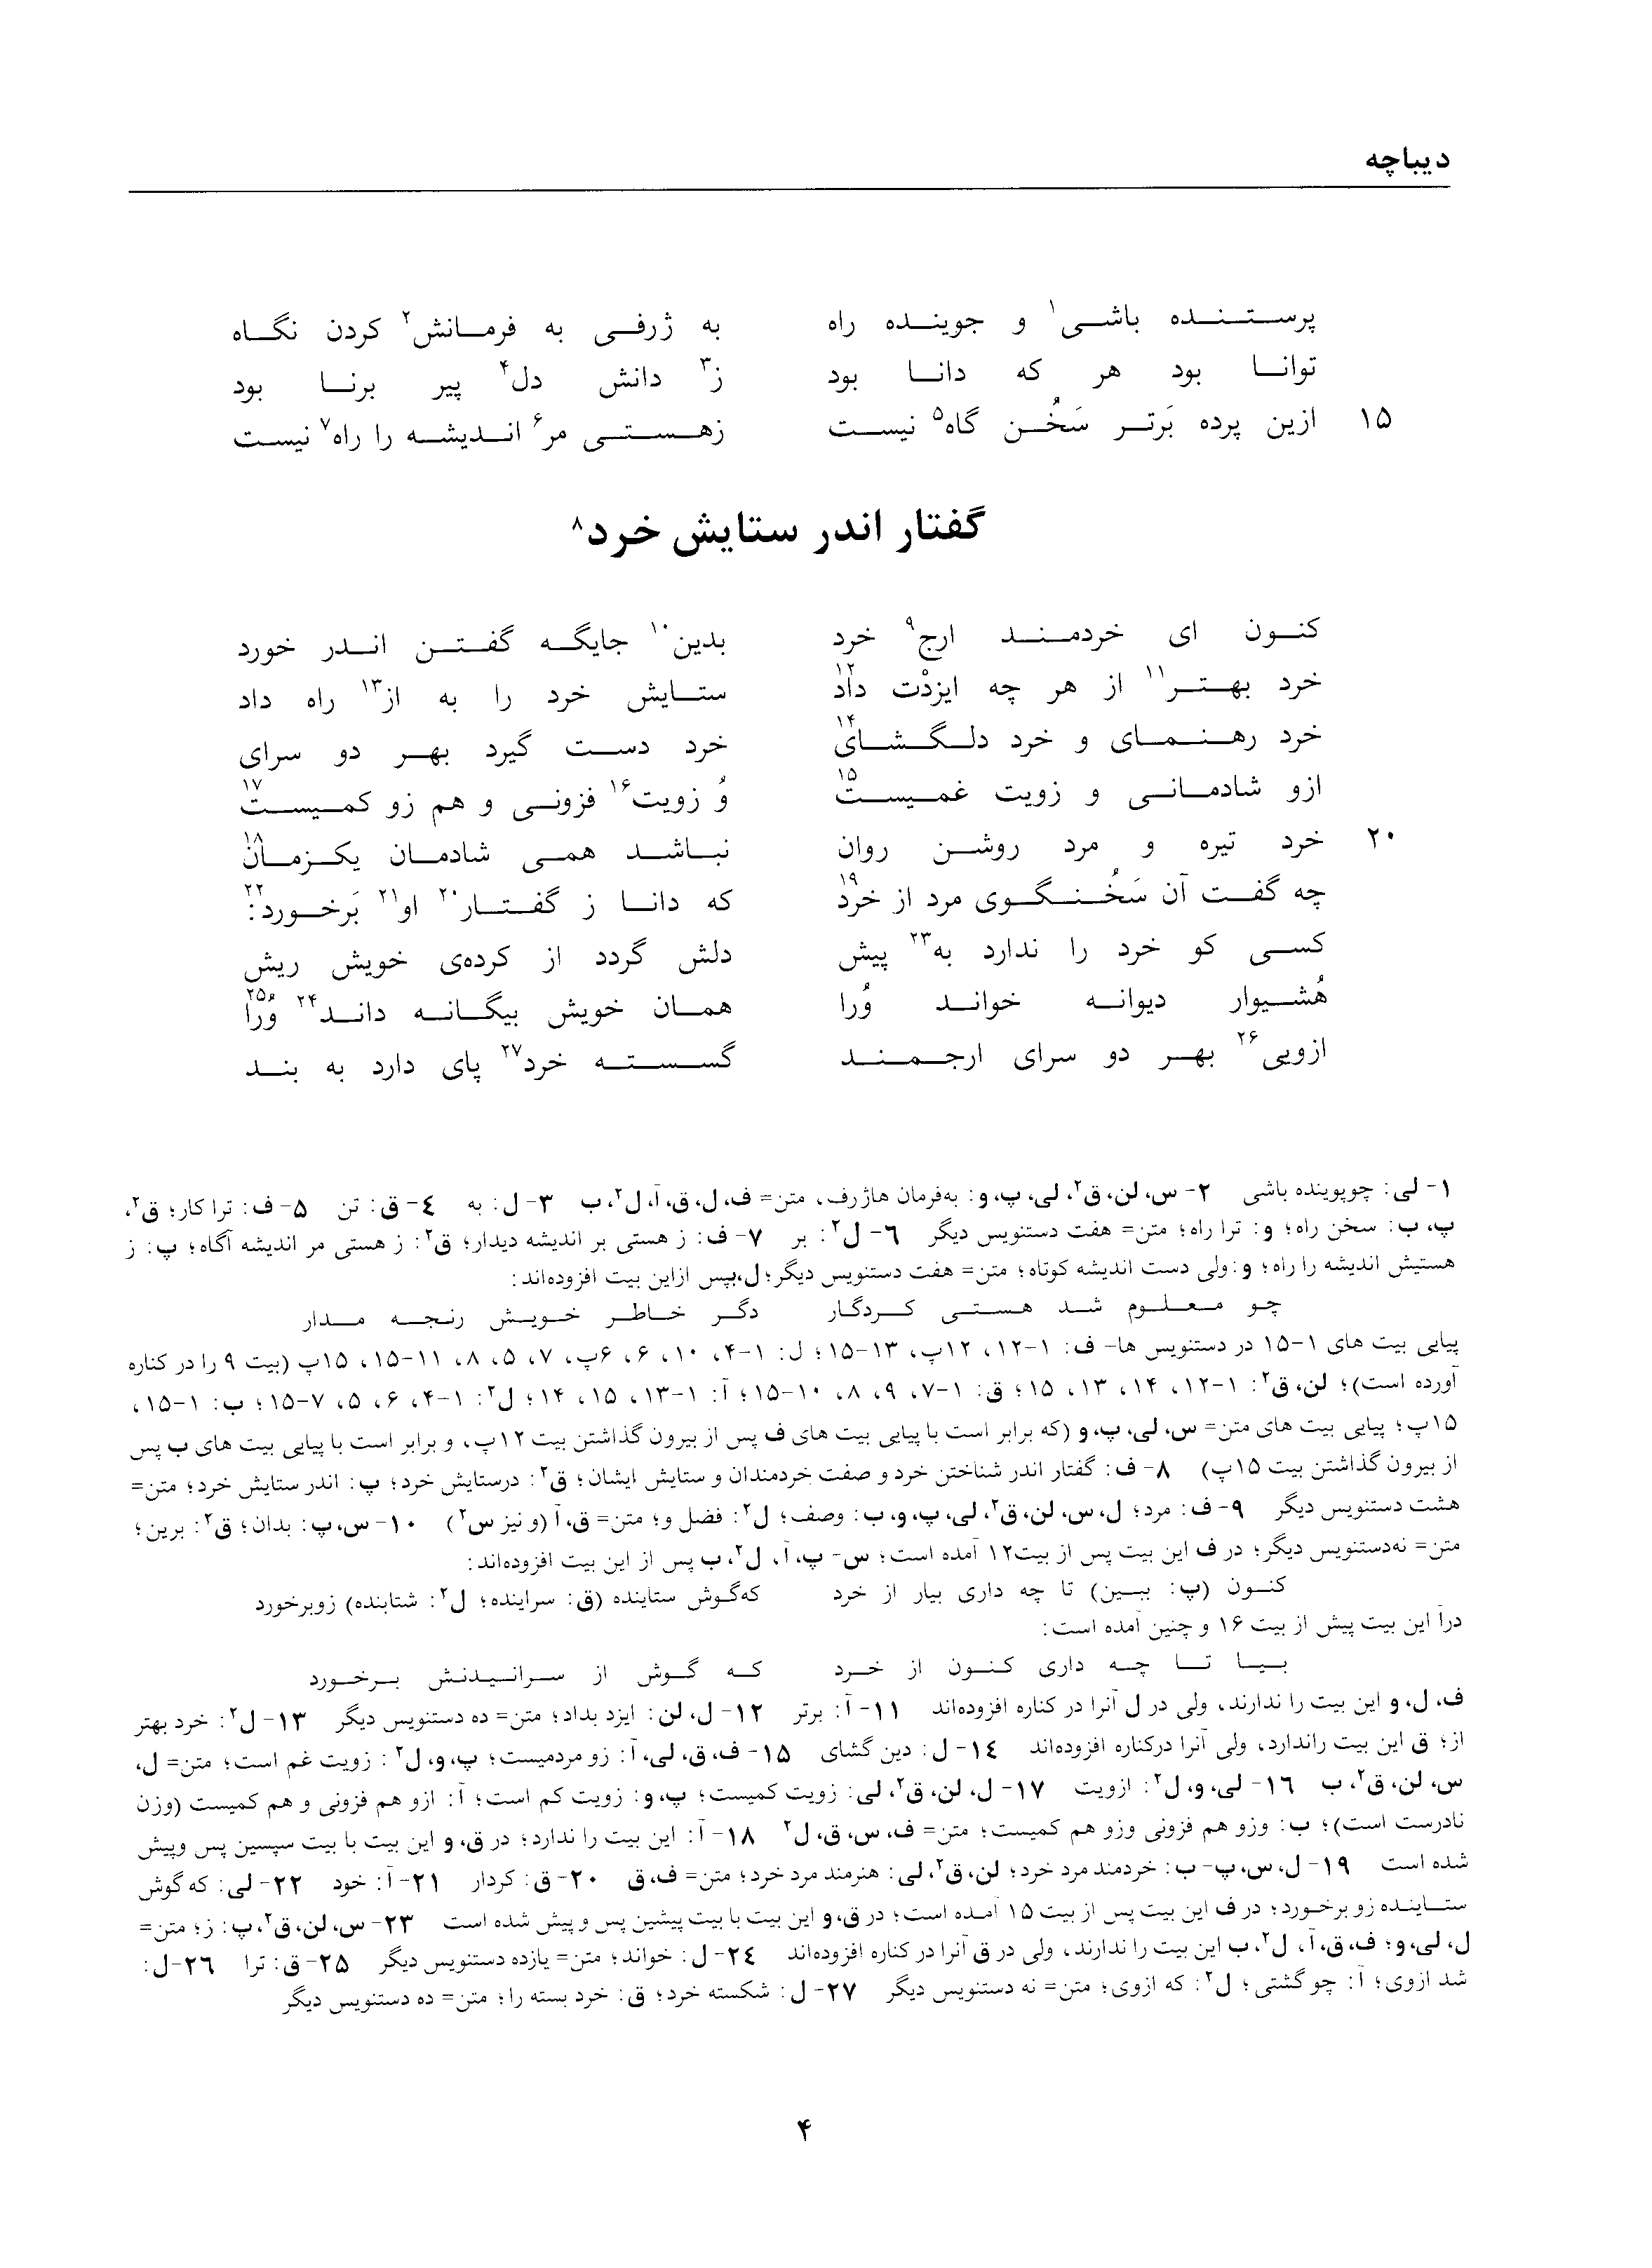 vol. 1, p. 4